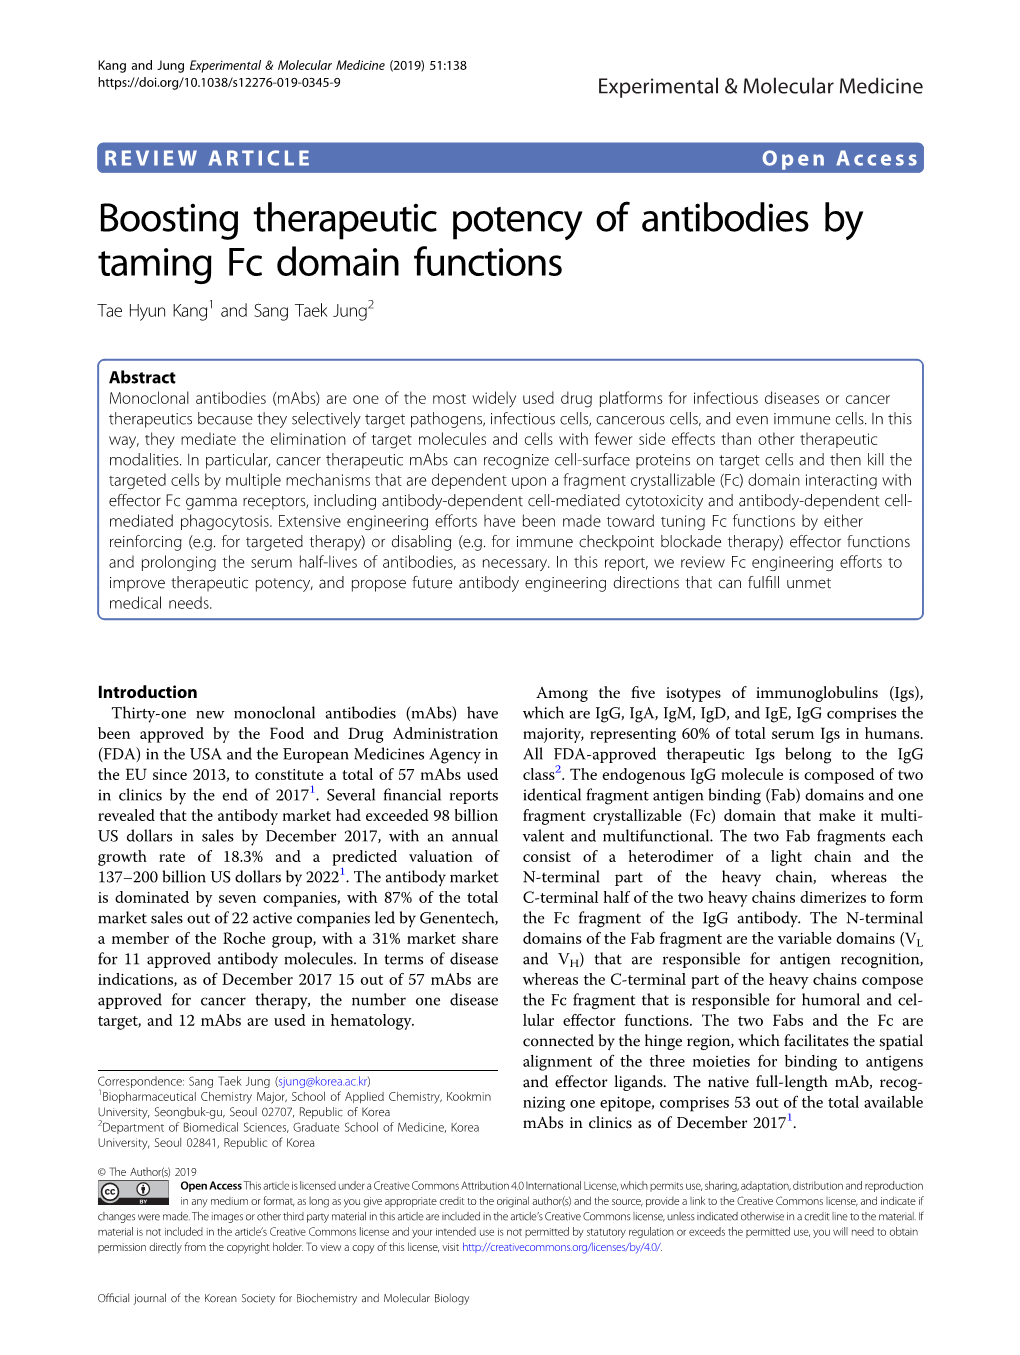 Boosting Therapeutic Potency of Antibodies by Taming Fc Domain Functions Tae Hyun Kang1 and Sang Taek Jung2